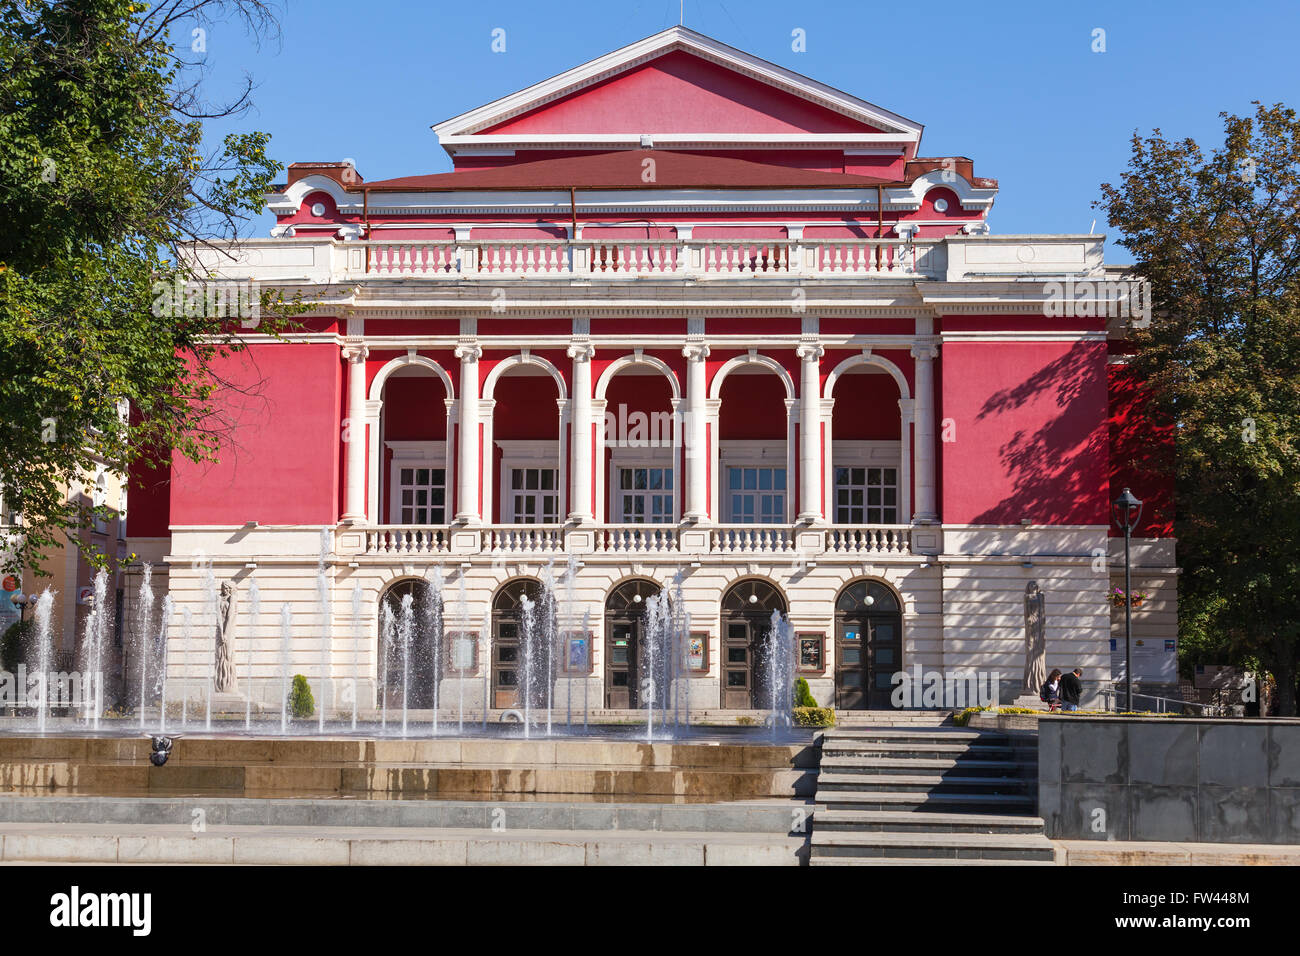 Ruse, Bulgaria - September 29, 2014: Facade of Bulgarian National Opera House in Ruse Stock Photo